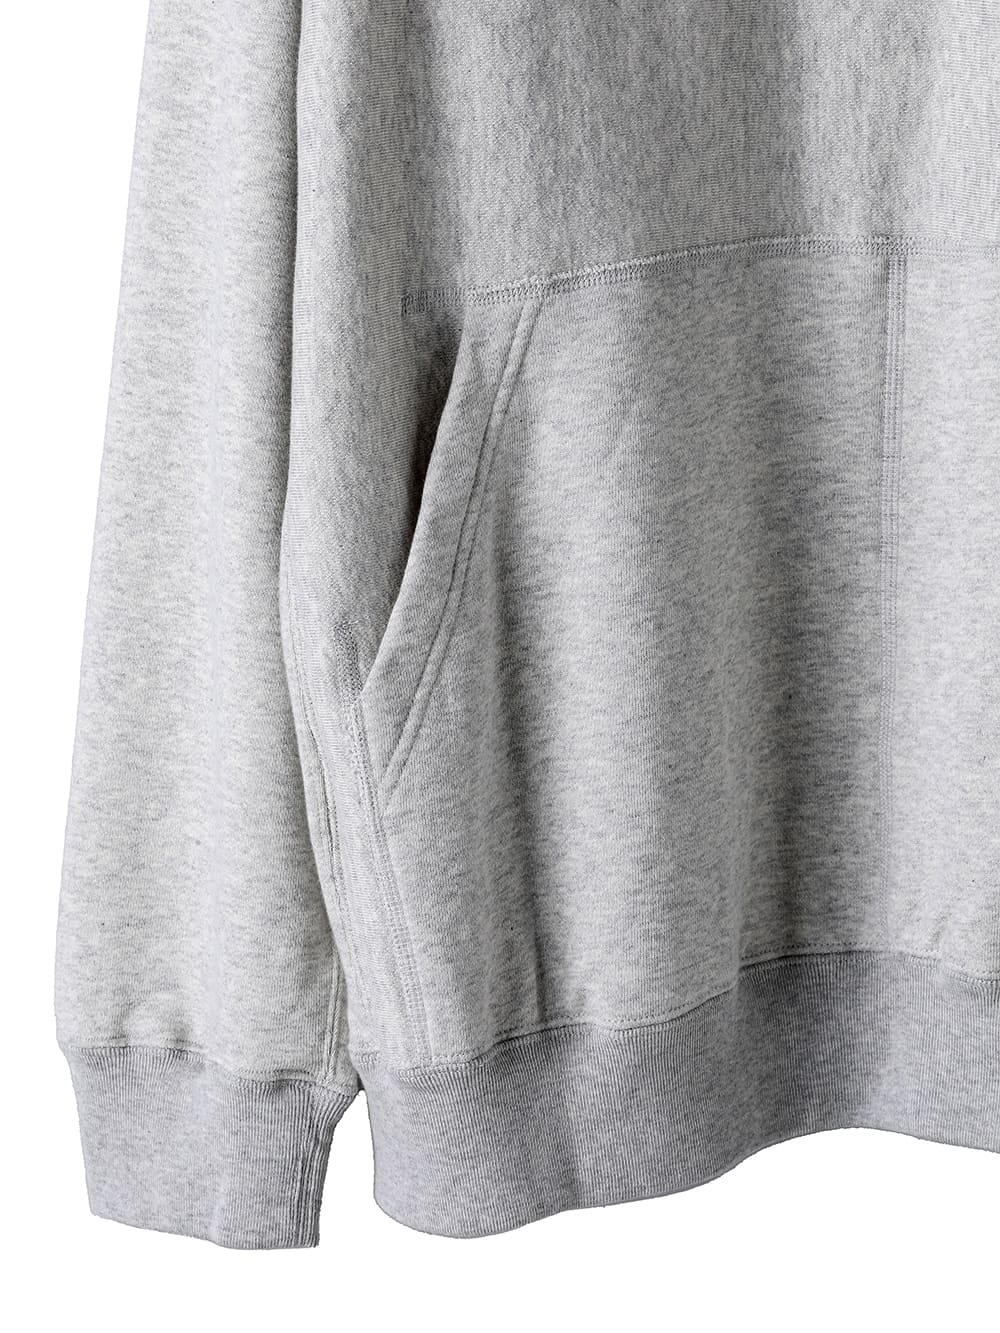 new two-way zip reverse oversized hoodie.